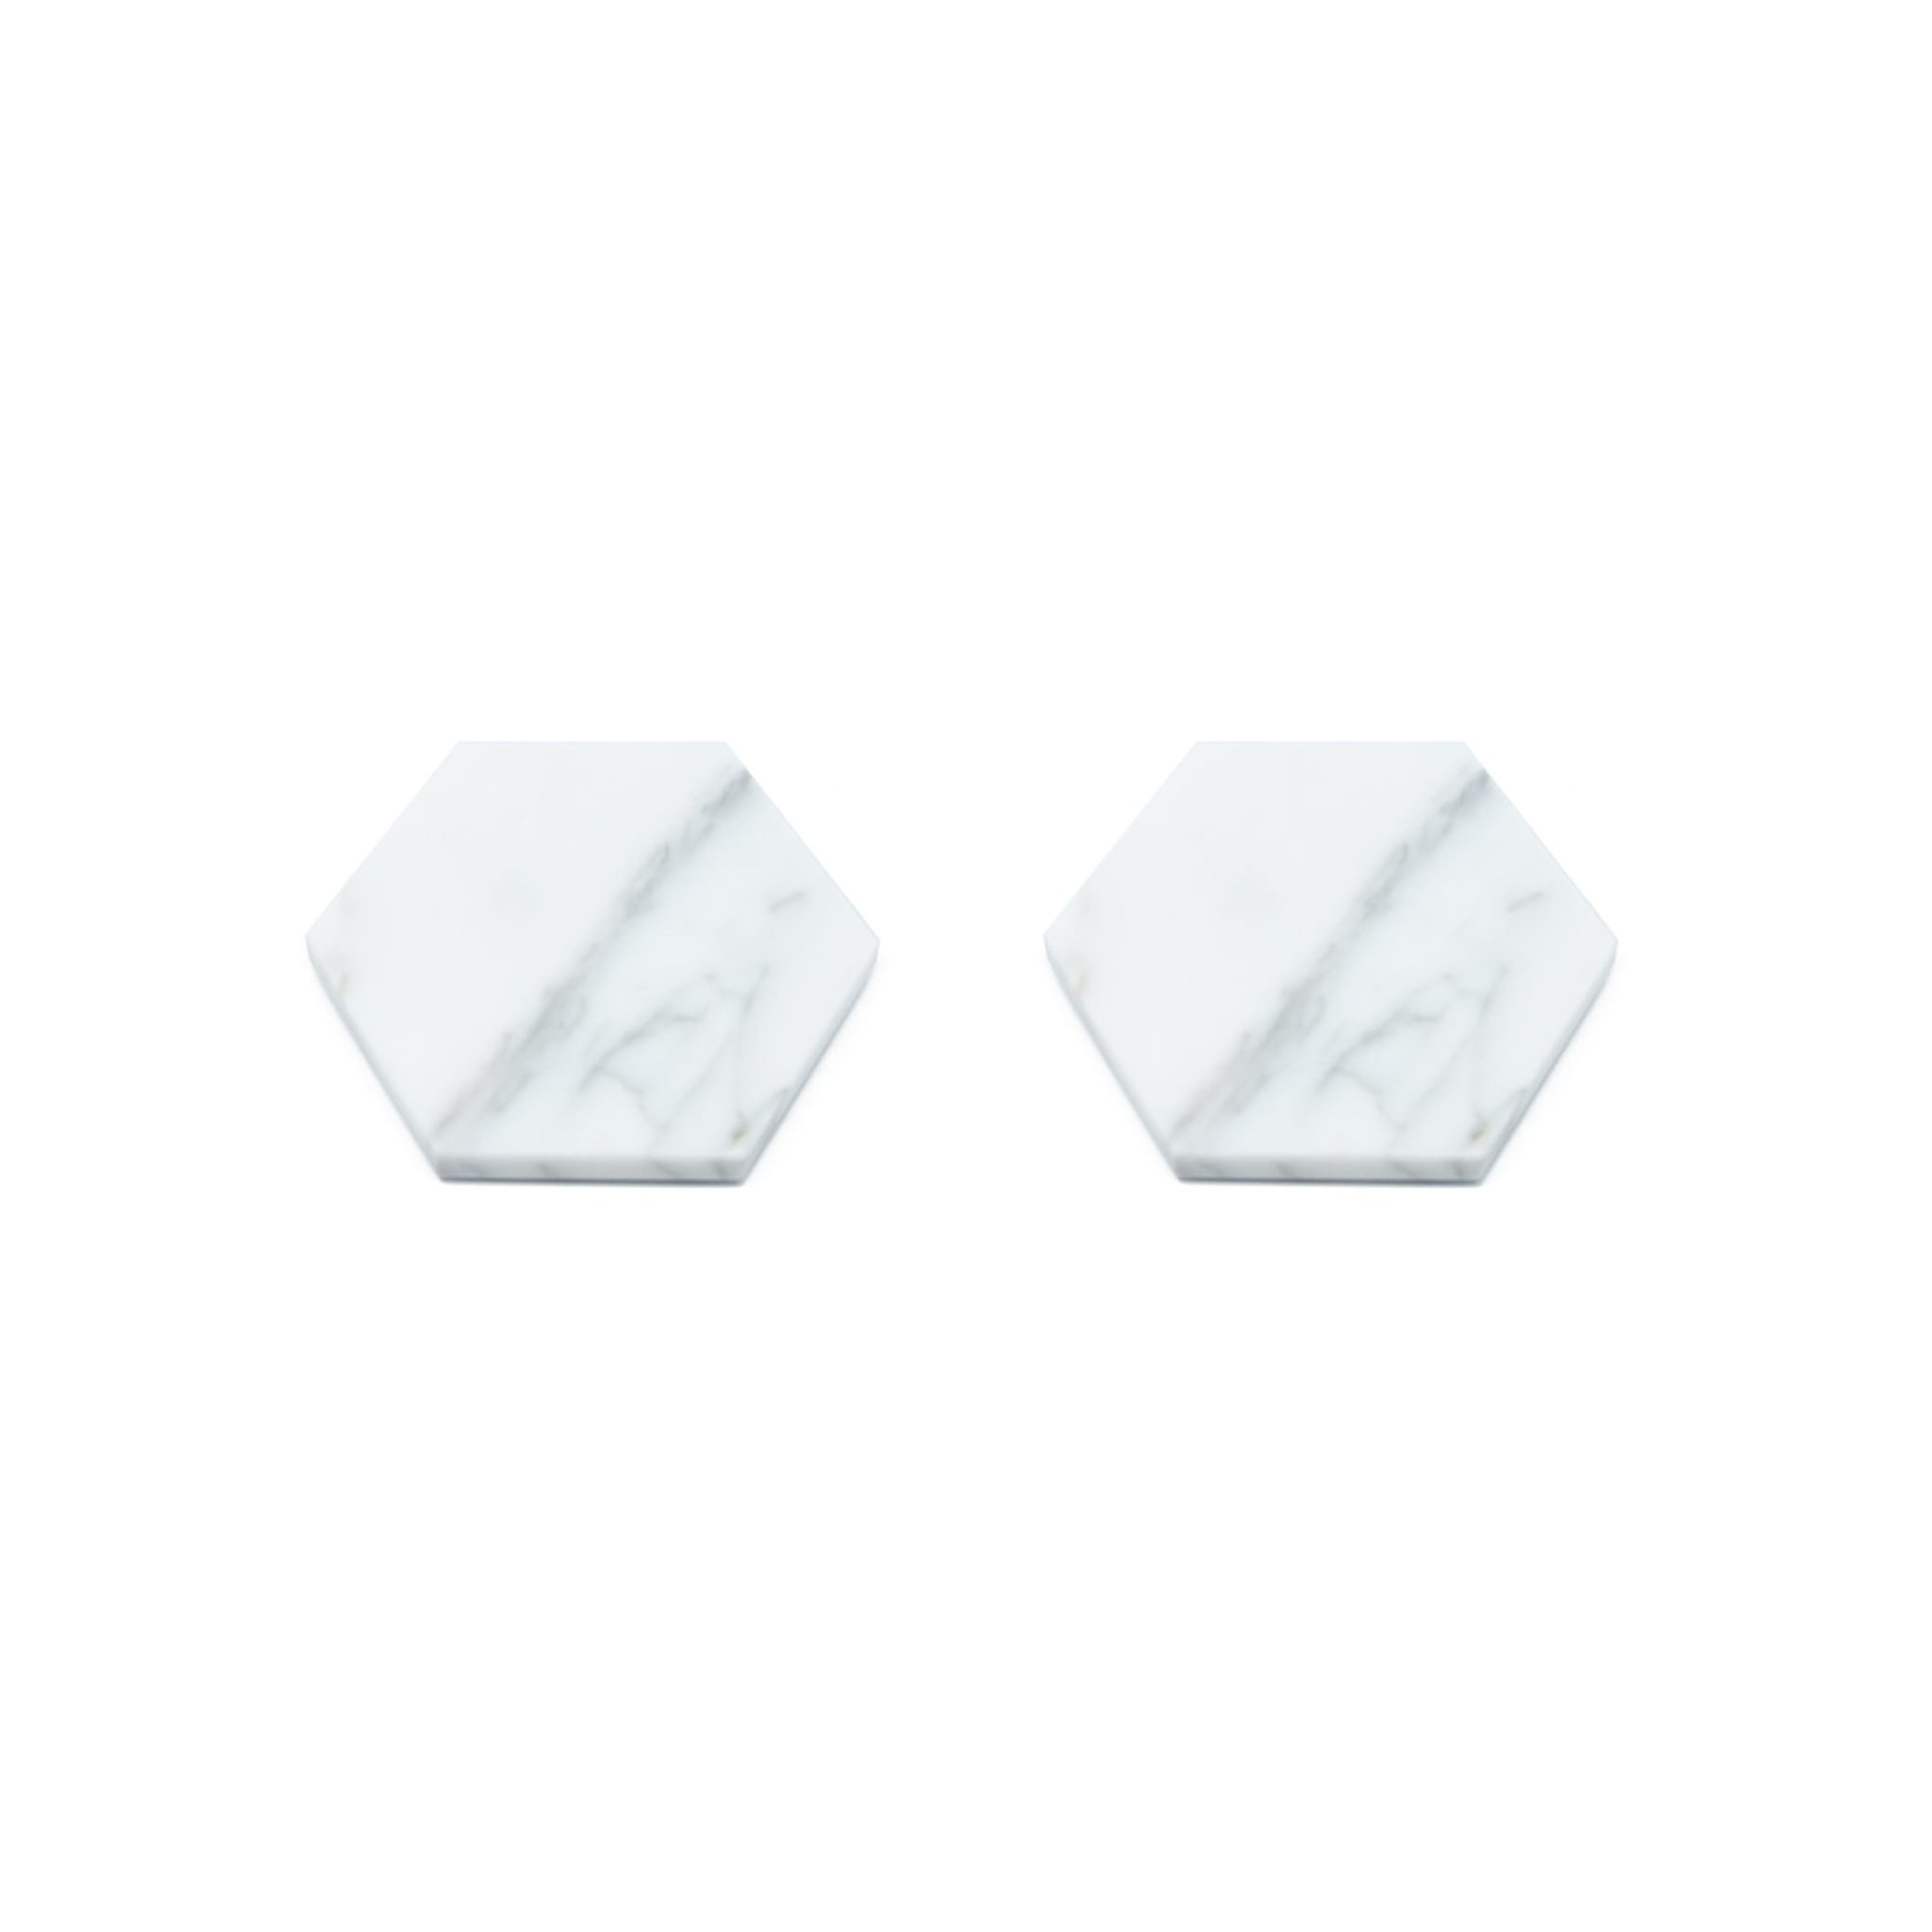 Set of 4 Hexagonal White Coasters - Alternative view 2